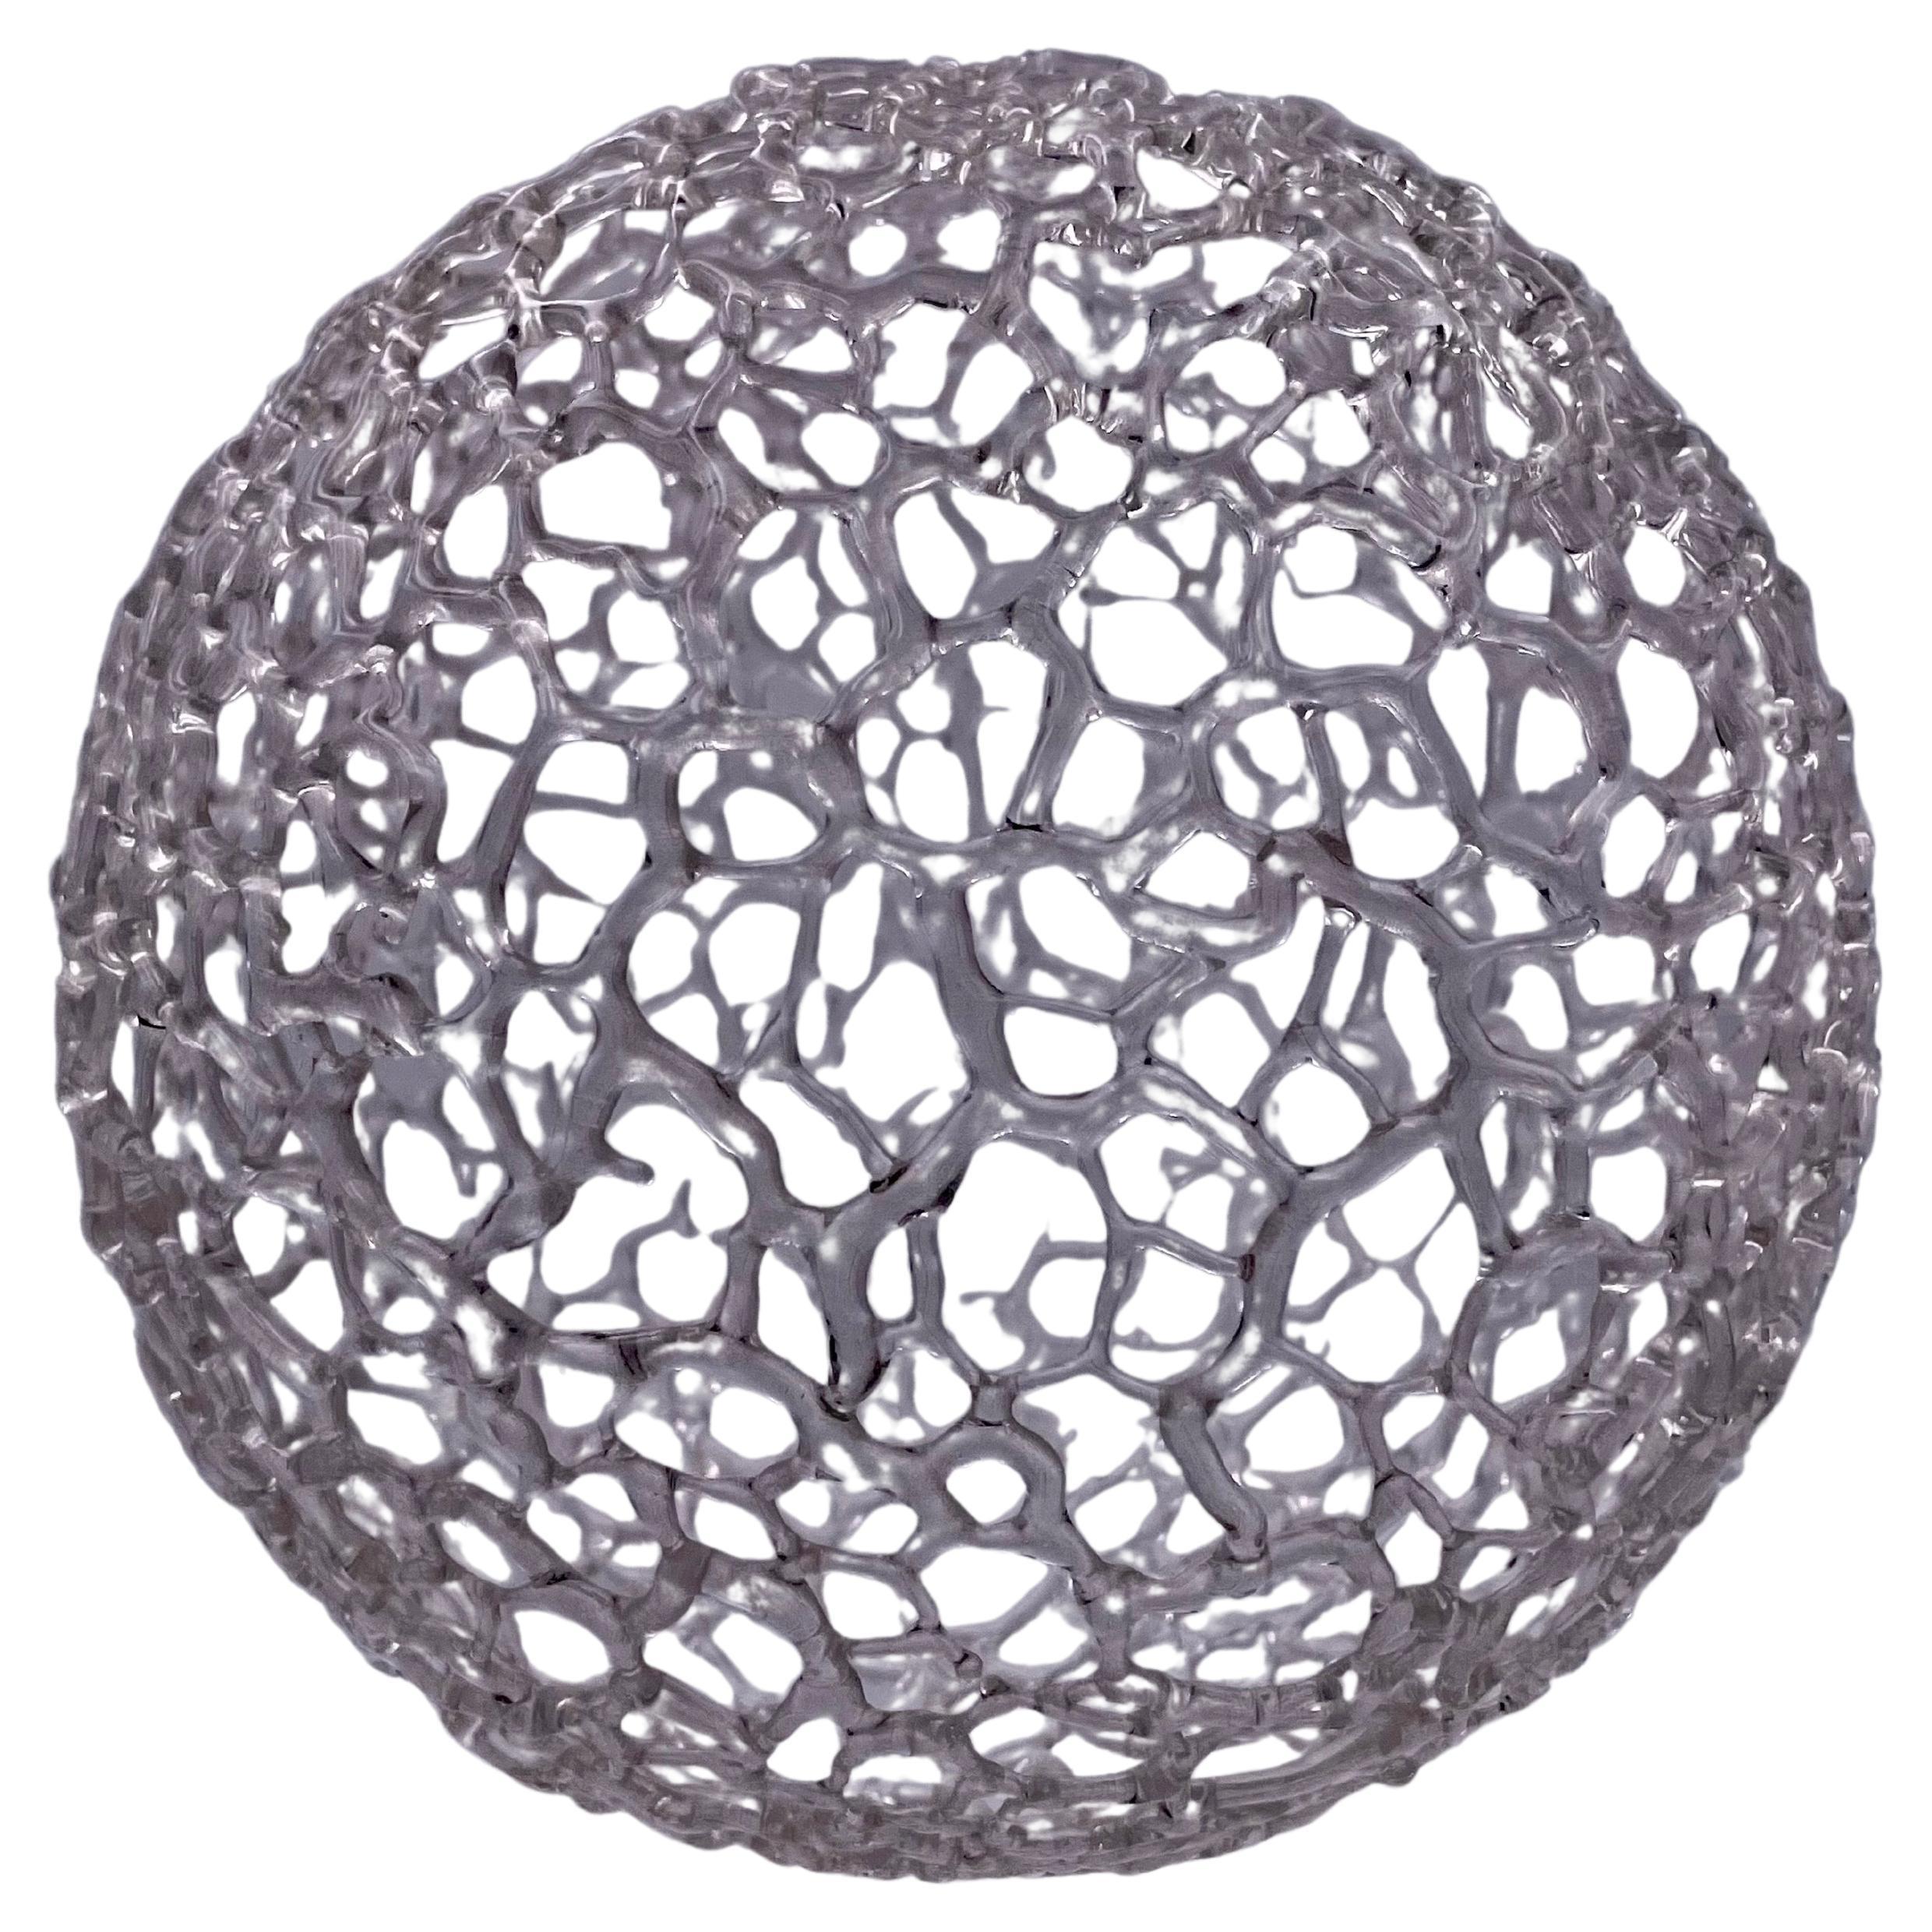 Rare Unique Glass Sphere by California Artist